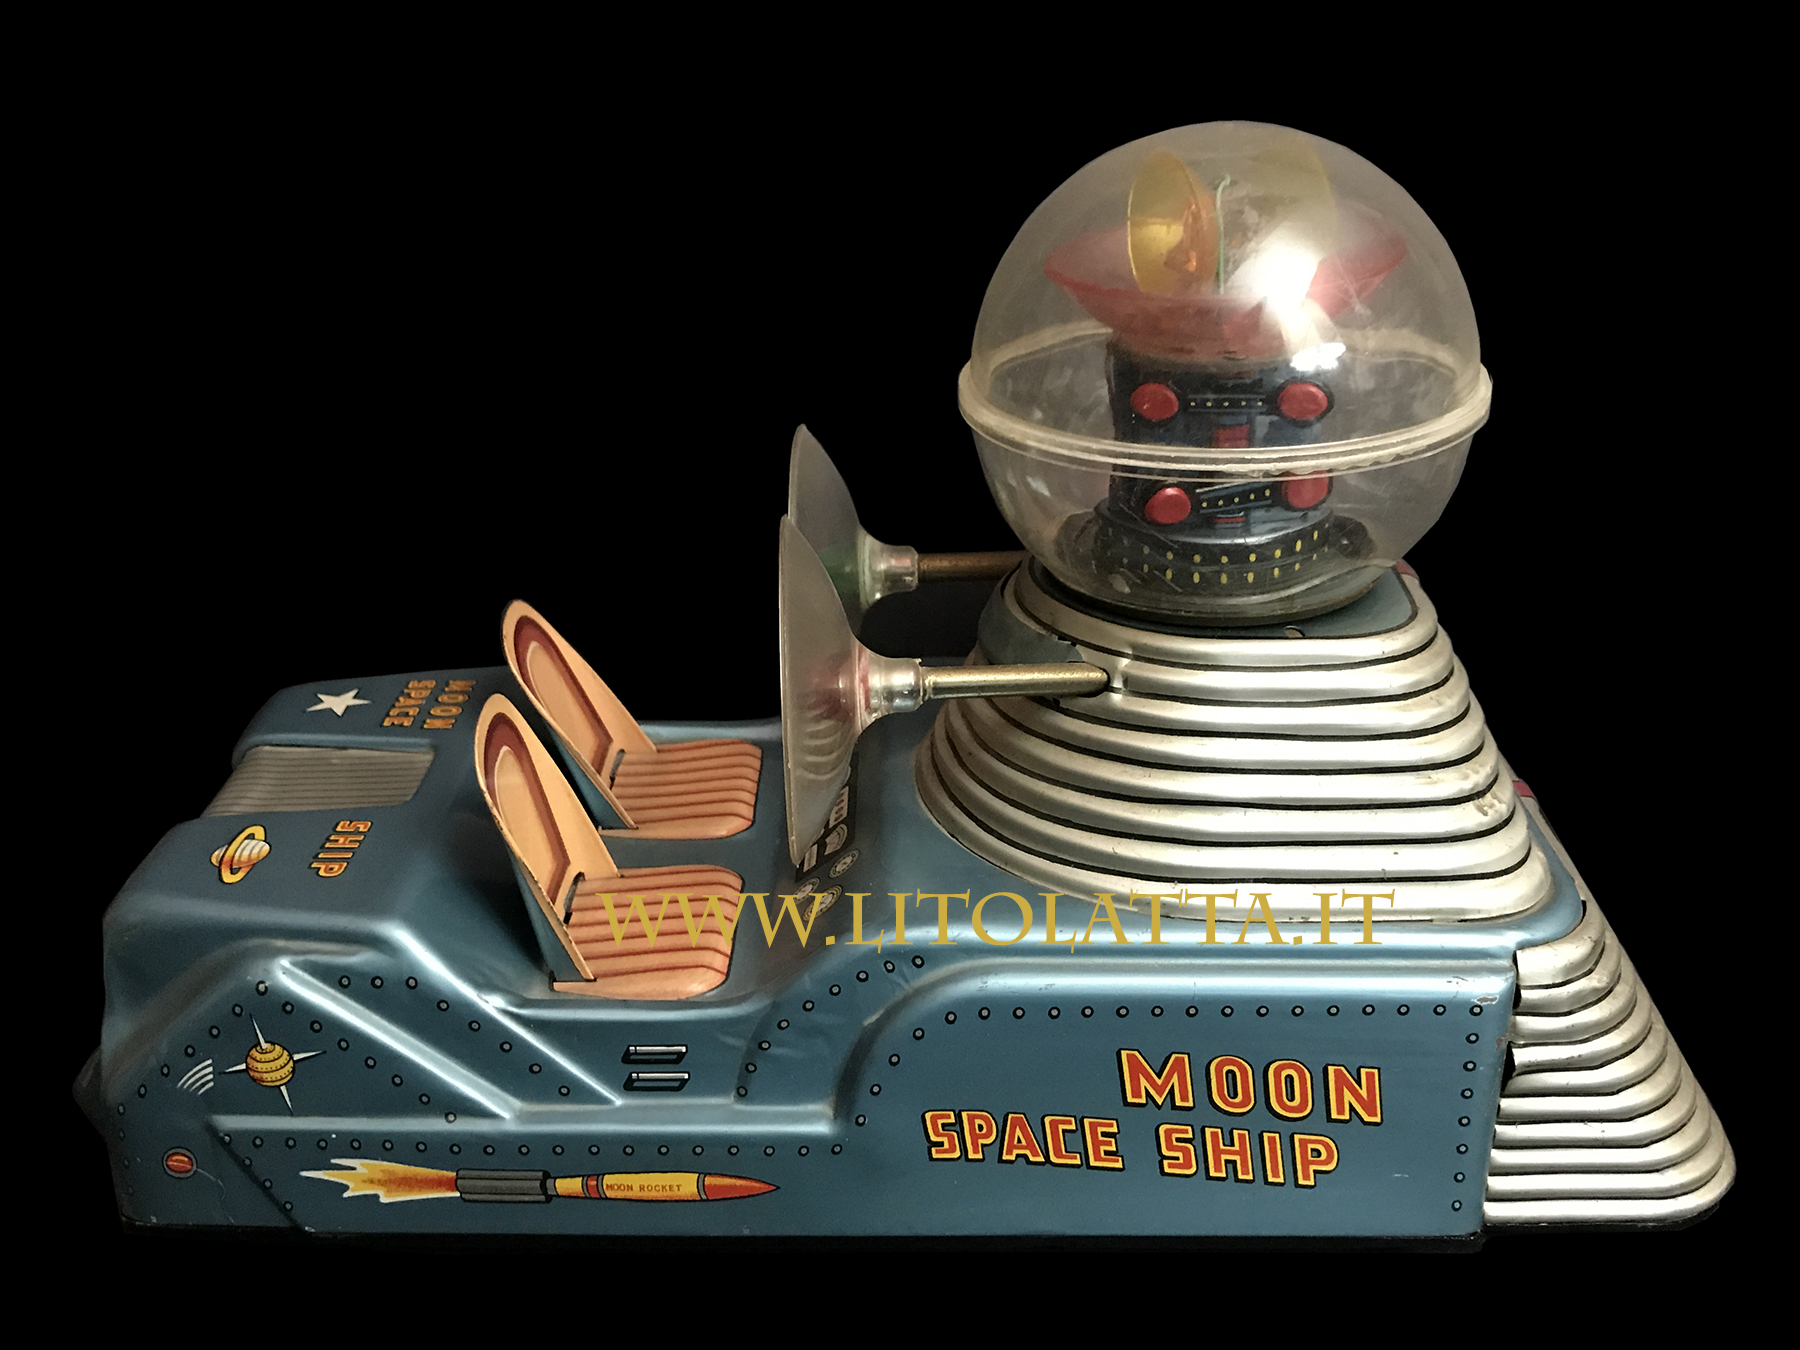 MOON SPACE SHIP NOMURA TOYS - Foto dalla collezione di Giovanfranco di Giunta.